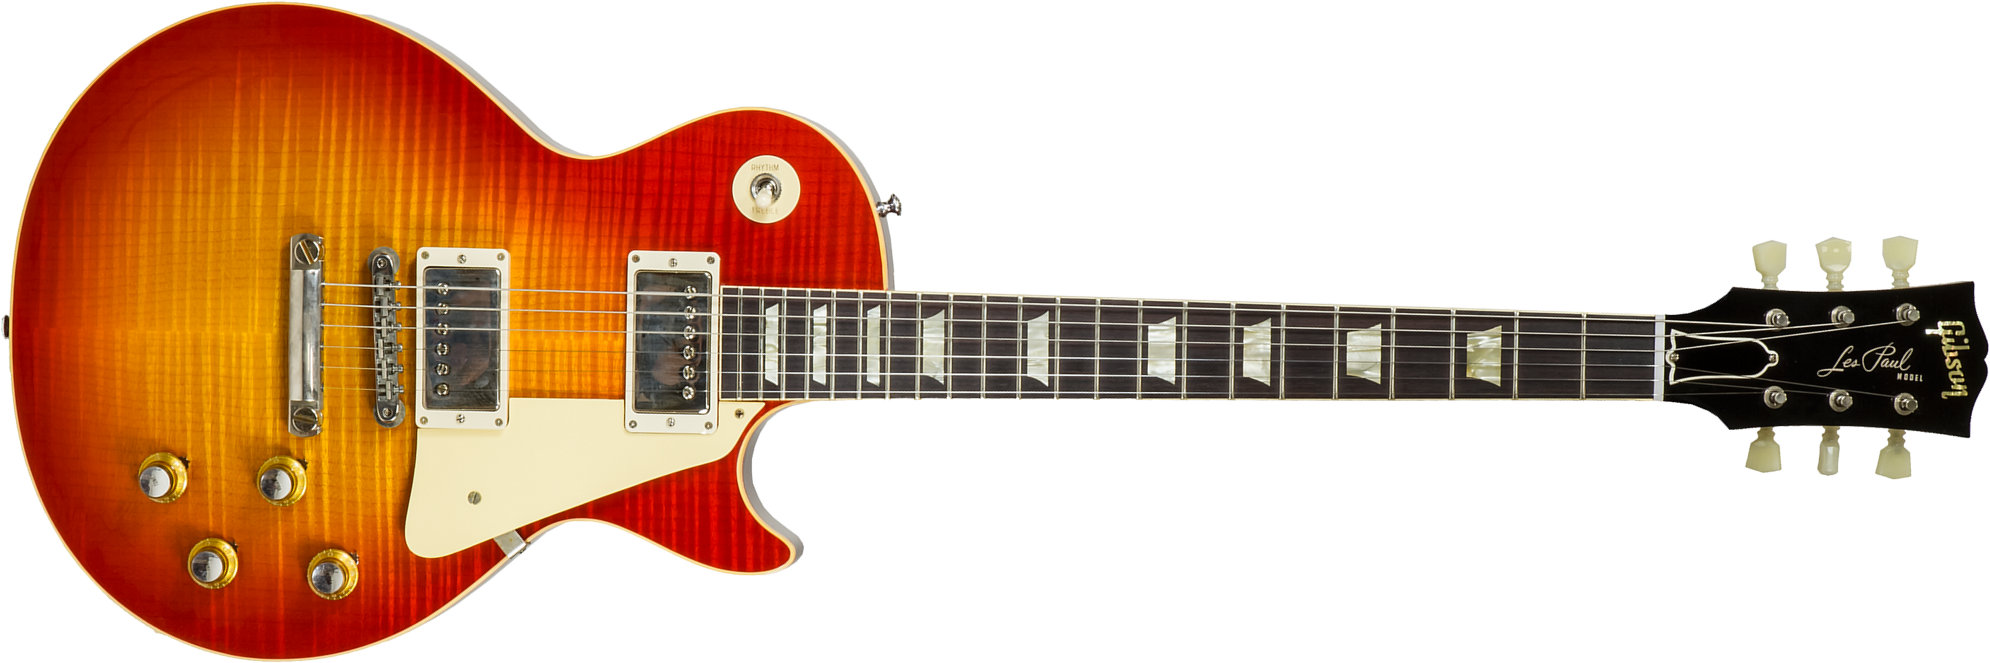 Gibson Custom Shop Les Paul Standard 1960 Reissue 2h Ht Rw #03222 - Vos Tangerine Burst - Guitare Électrique Single Cut - Main picture